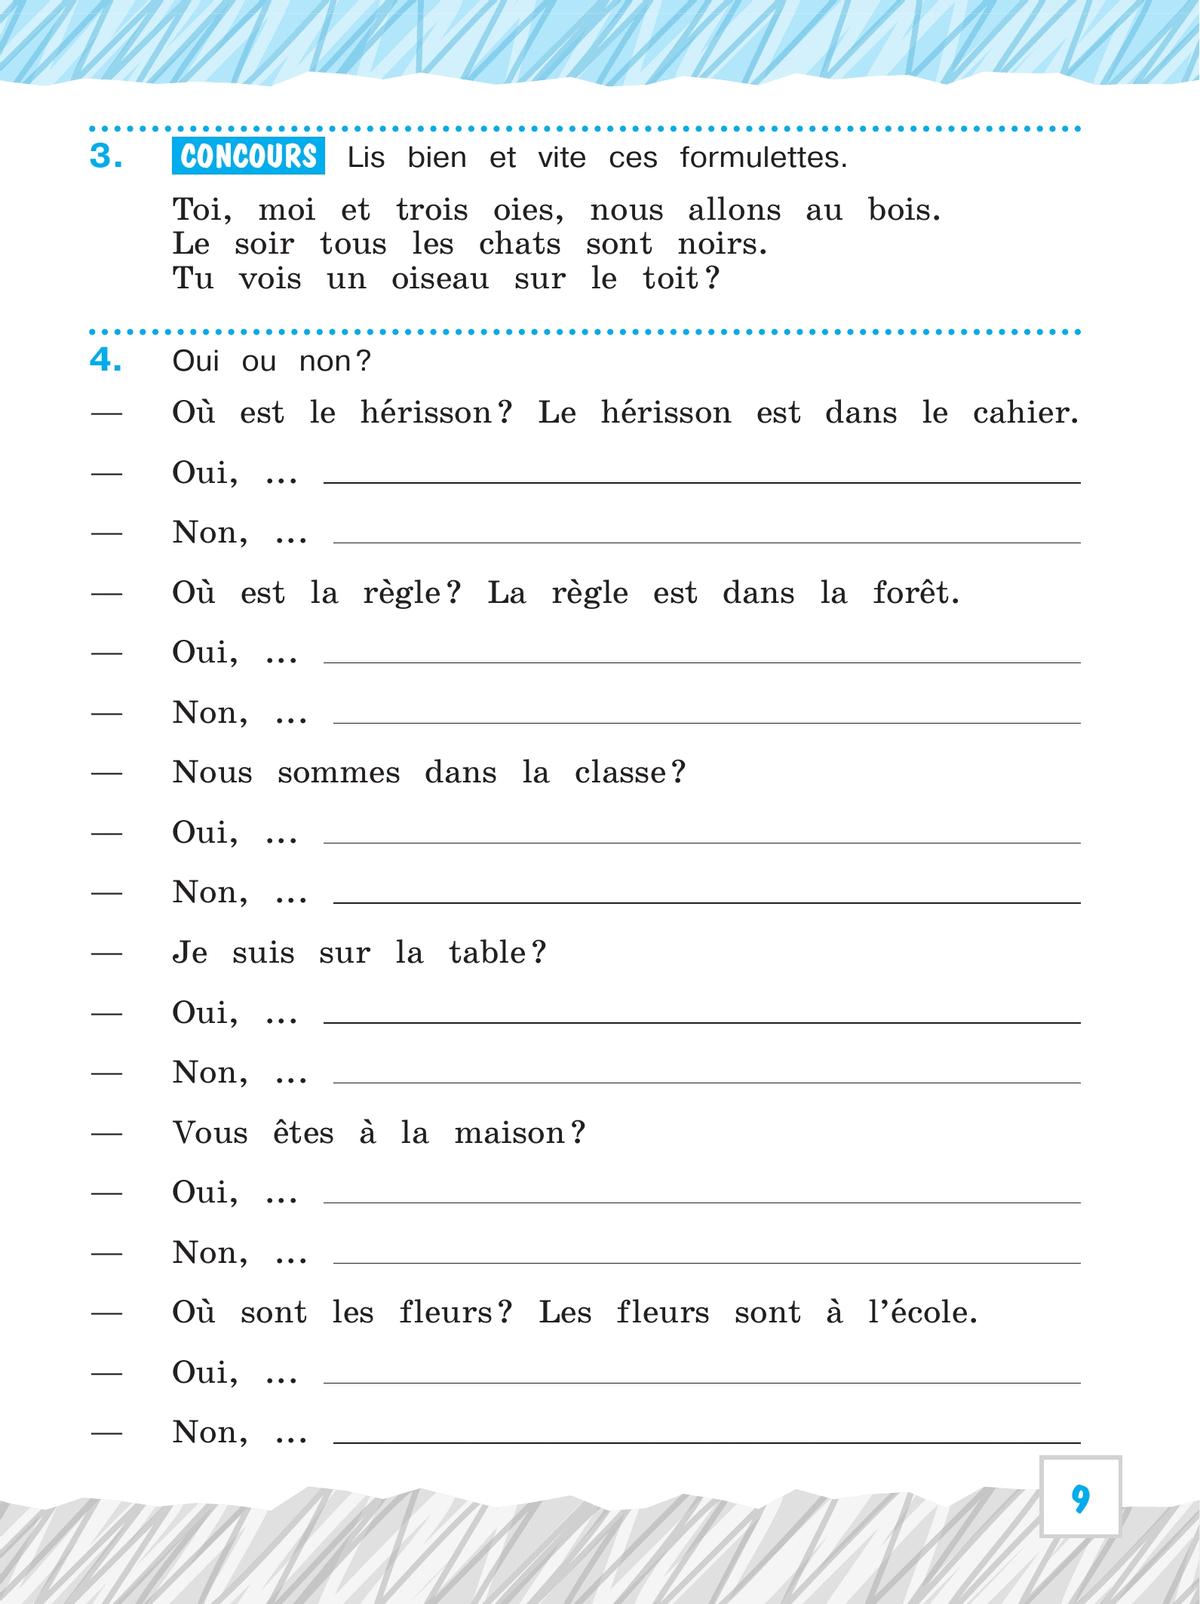 Французский язык. Рабочая тетрадь. 3 класс. Углубленное изучение. 2